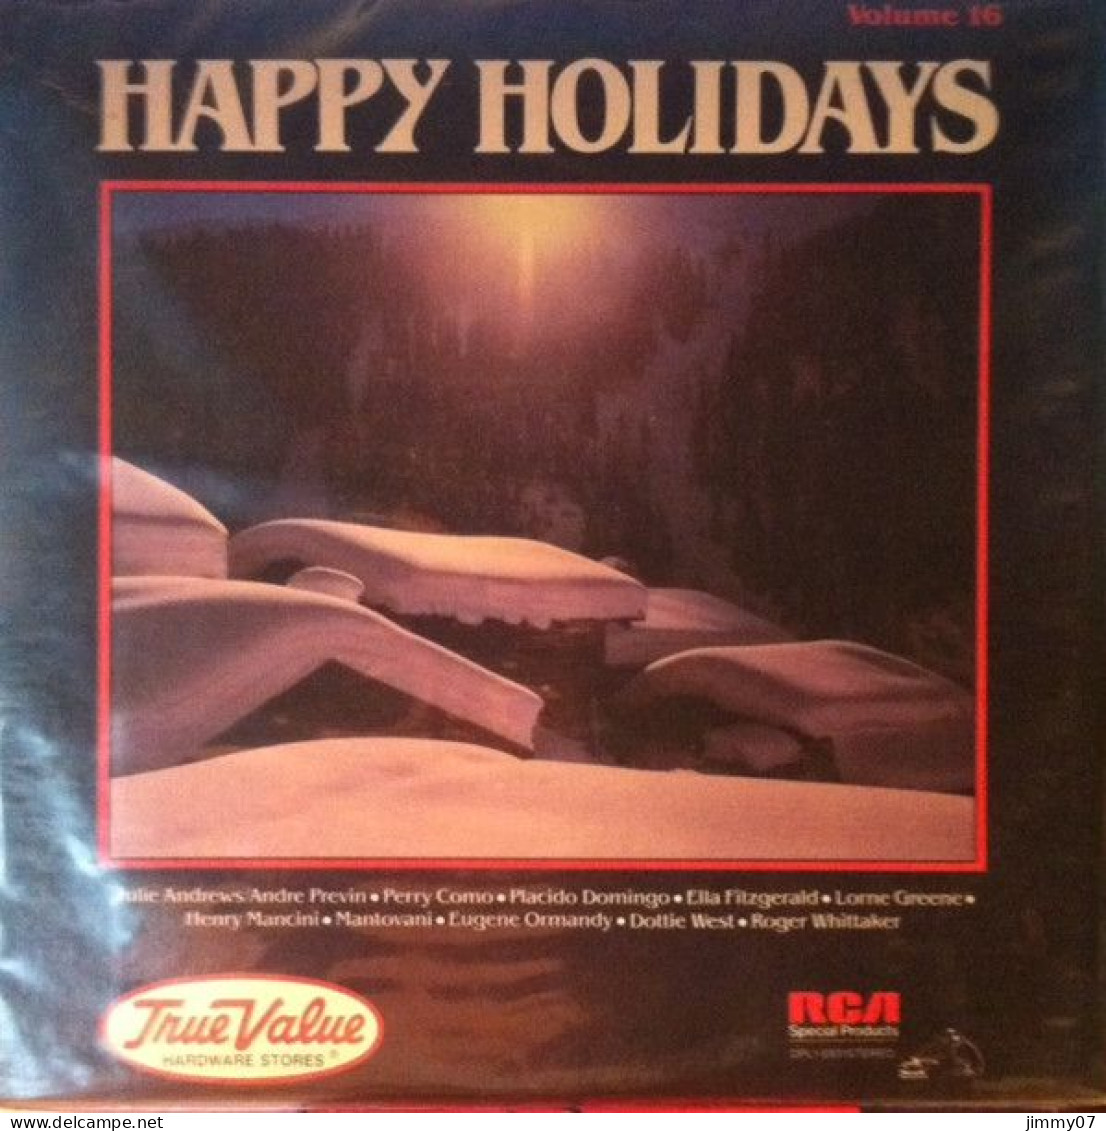 Various - True Value Hardware Stores - Happy Holidays - Volume 16 (LP, Album, Comp) - Disco, Pop